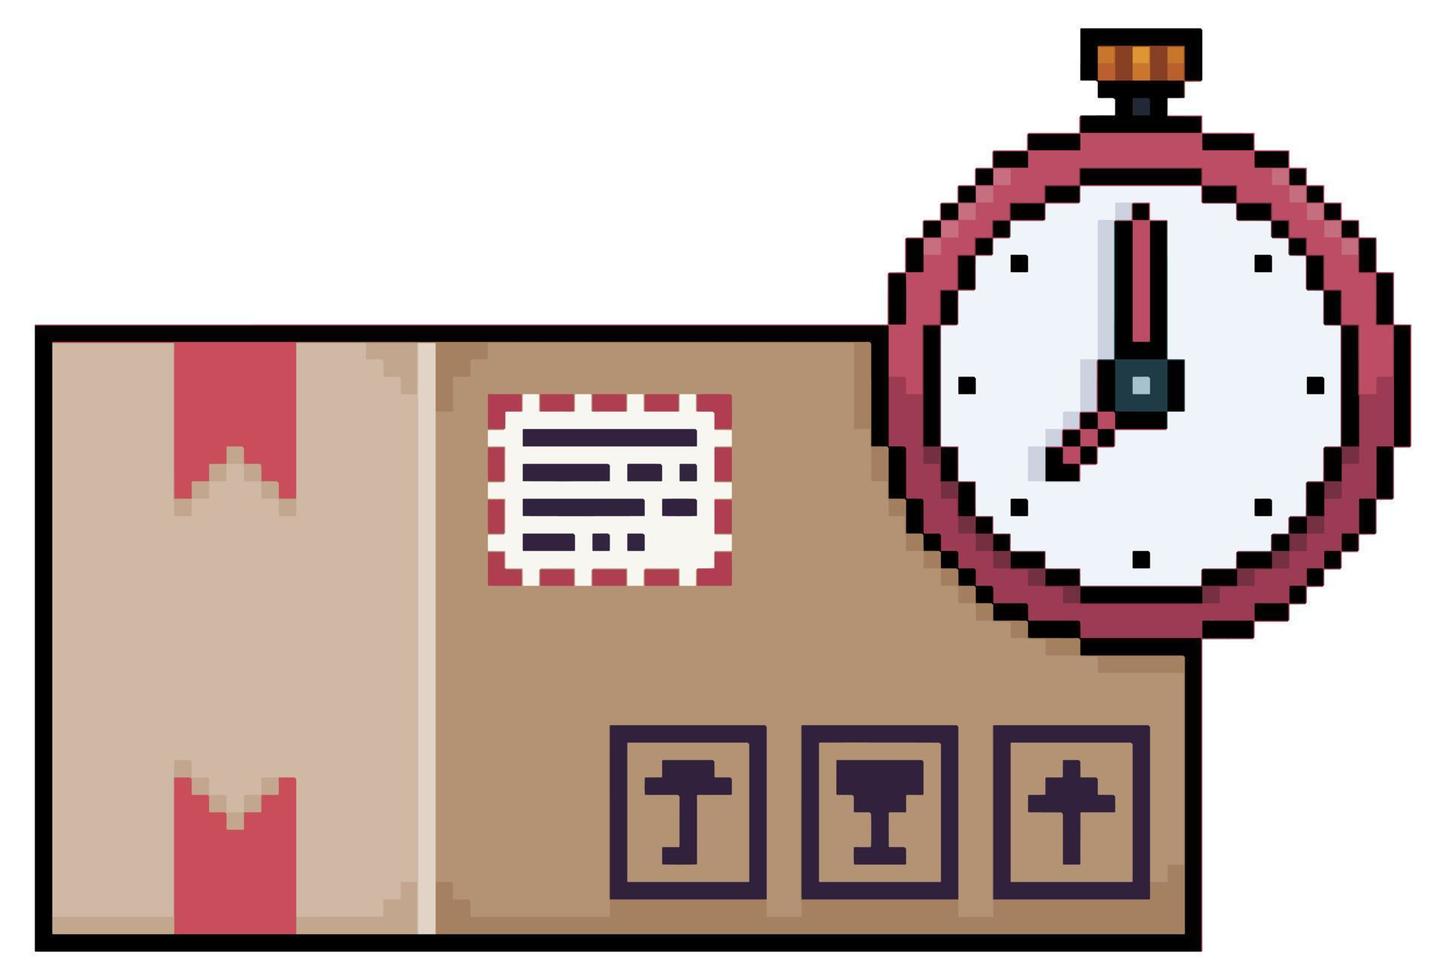 Pixel-Art-Bestellung im Karton mit Uhrensymbol, Express-Liefervektorsymbol für 8-Bit-Spiel auf weißem Hintergrund vektor